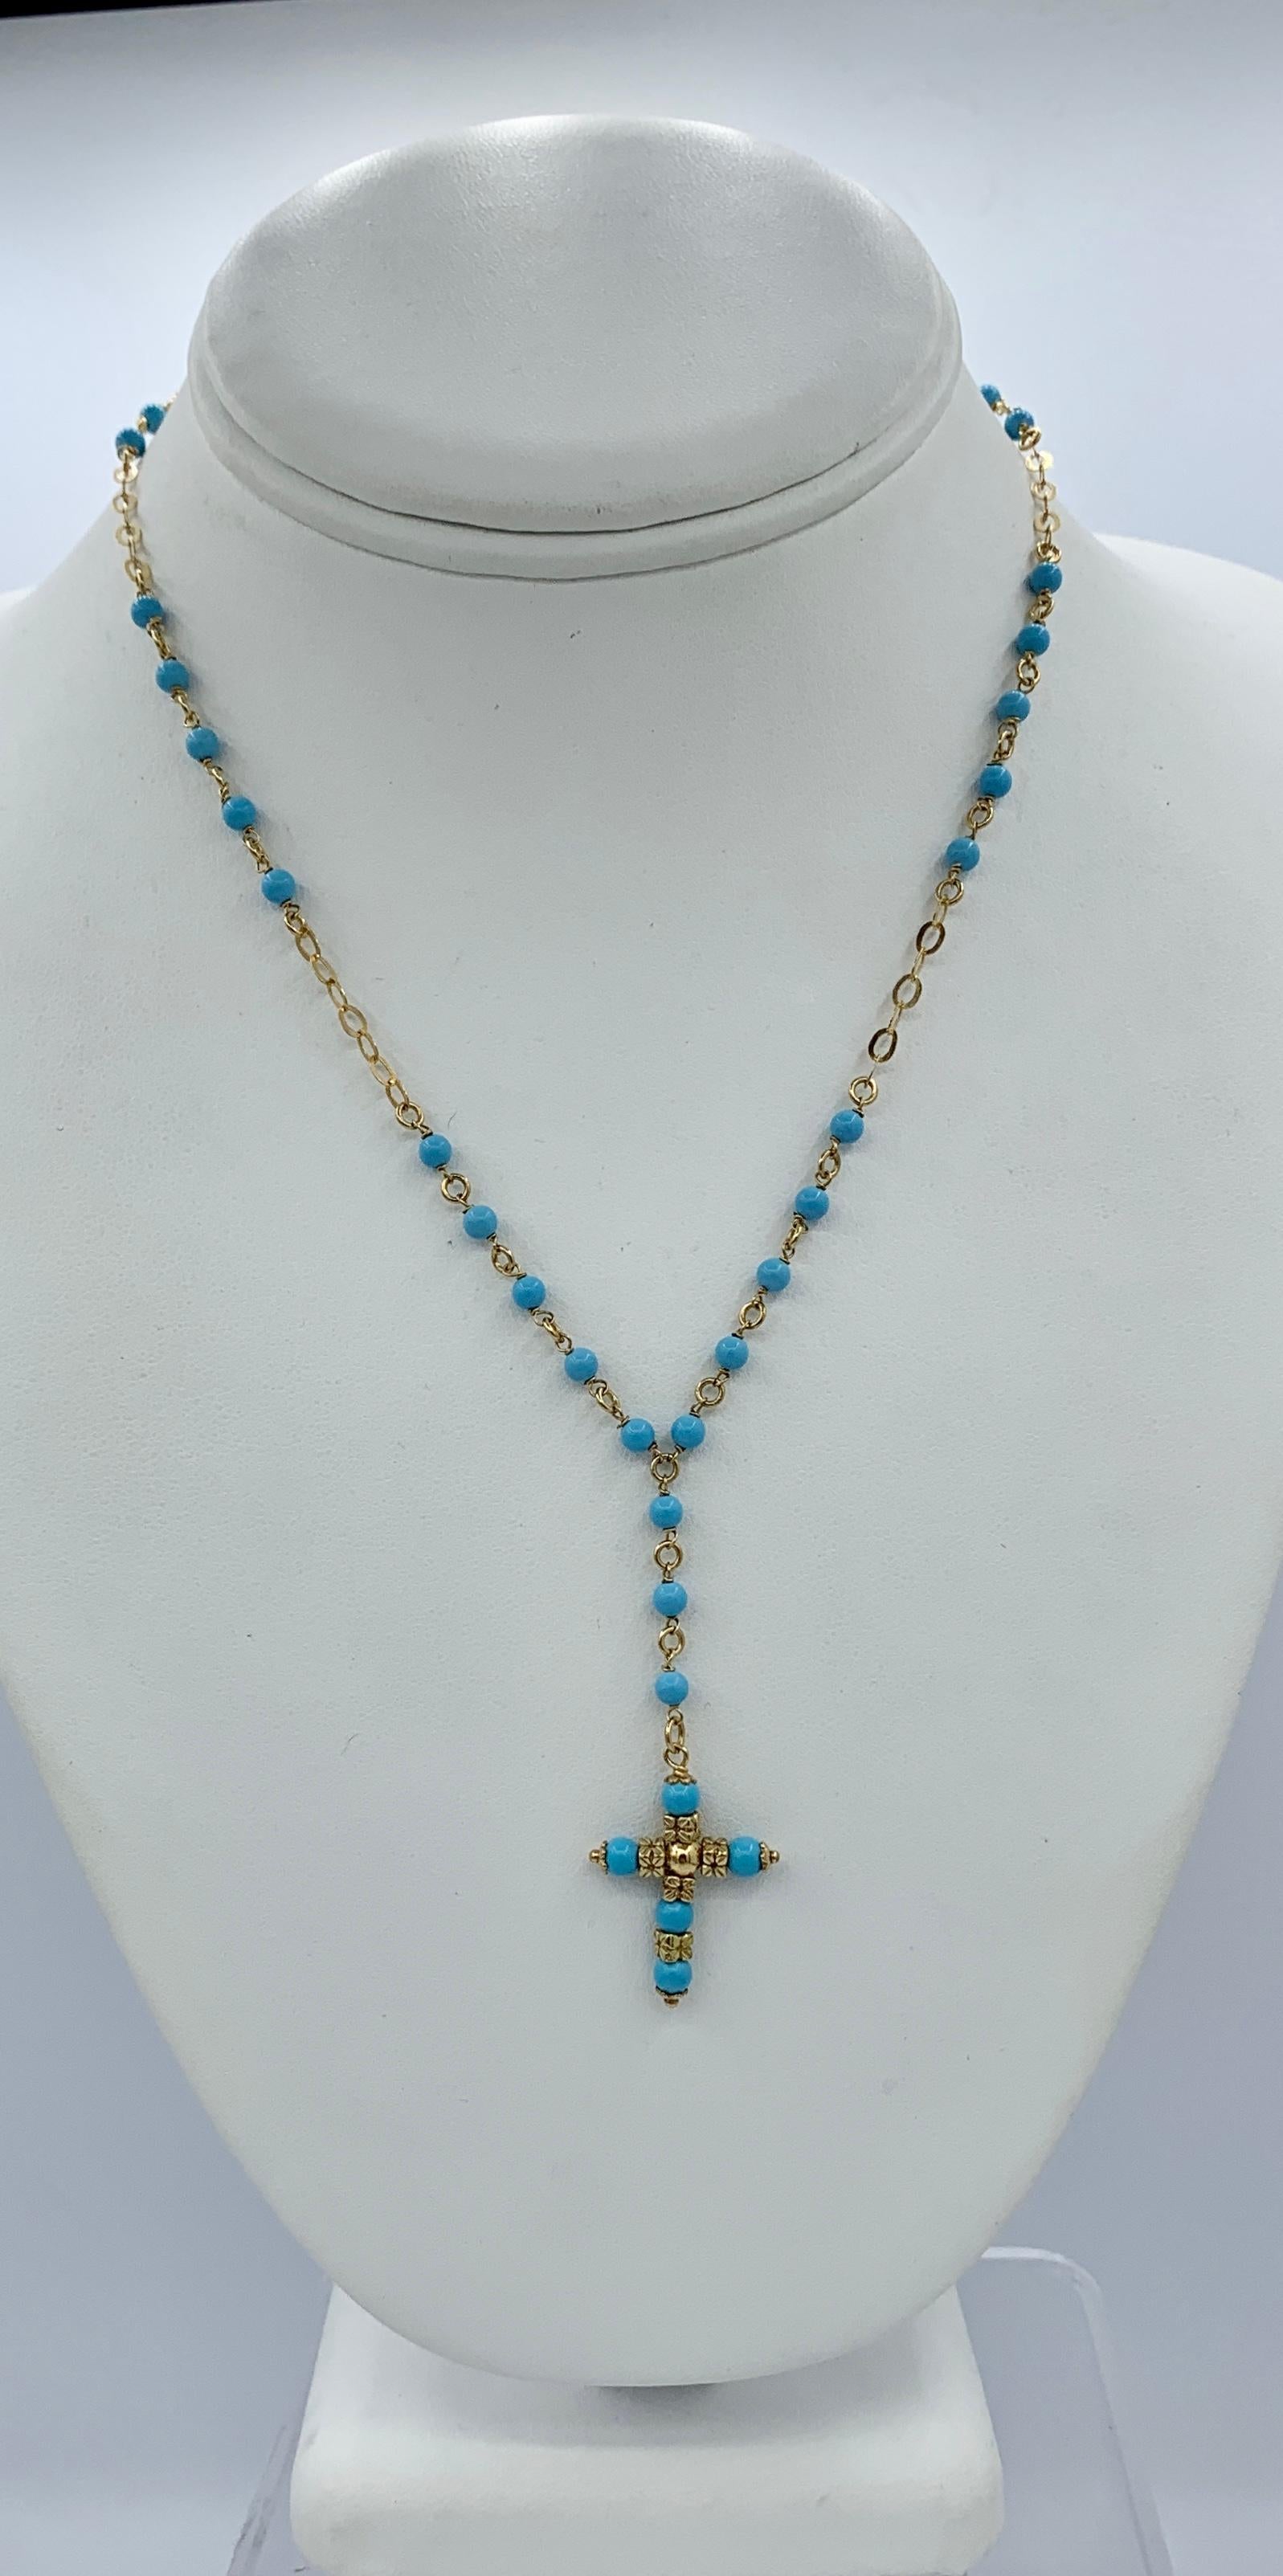 Dies ist eine schöne persische Türkis 14 Karat Gelbgold Kreuz Anhänger Halskette.  Die schöne Halskette besteht aus persischen Türkisperlen, die mit Gliedern aus 14 Karat Gelbgold verbunden sind.  In der Mitte ist Kreuz Anhänger mit persischen